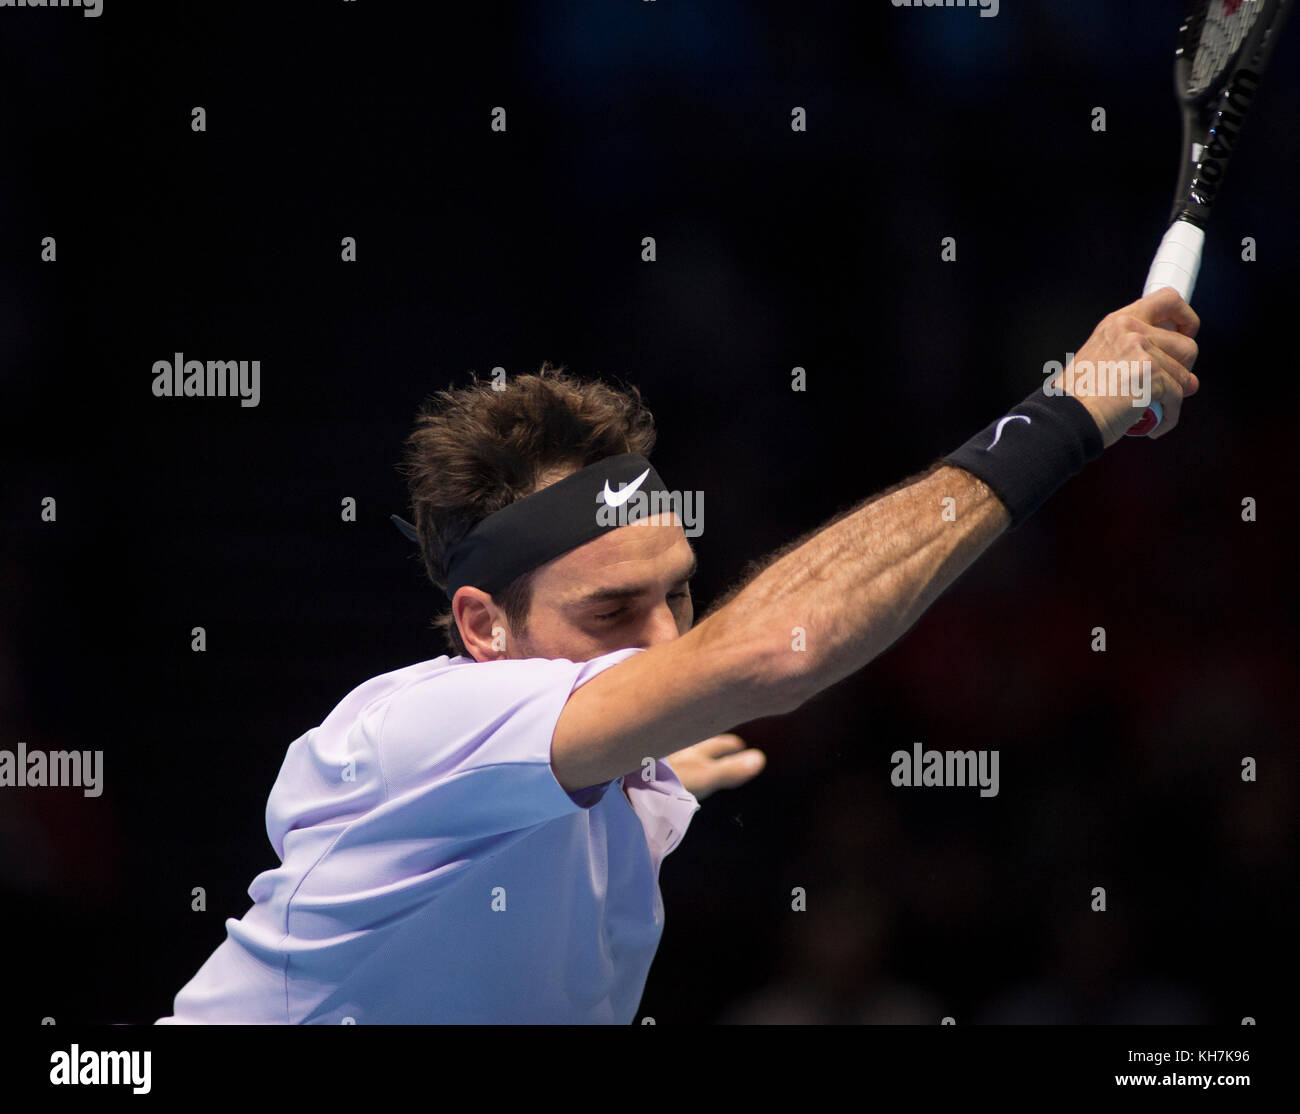 O2, London, Großbritannien. 14. November 2017. Tag 3 des Nitto ATP Finals, abendliches Einzelspiel, Roger Federer (SUI) gegen Alexander Zverev (GER). Der sechsfache Champion Roger Federer erreicht die letzten vier, nachdem er 7-6 (8:6) 5-7 6-1 in einem Spiel von 2 Stunden und 13 Minuten gewonnen hat. Quelle: Malcolm Park/Alamy Live News. Stockfoto